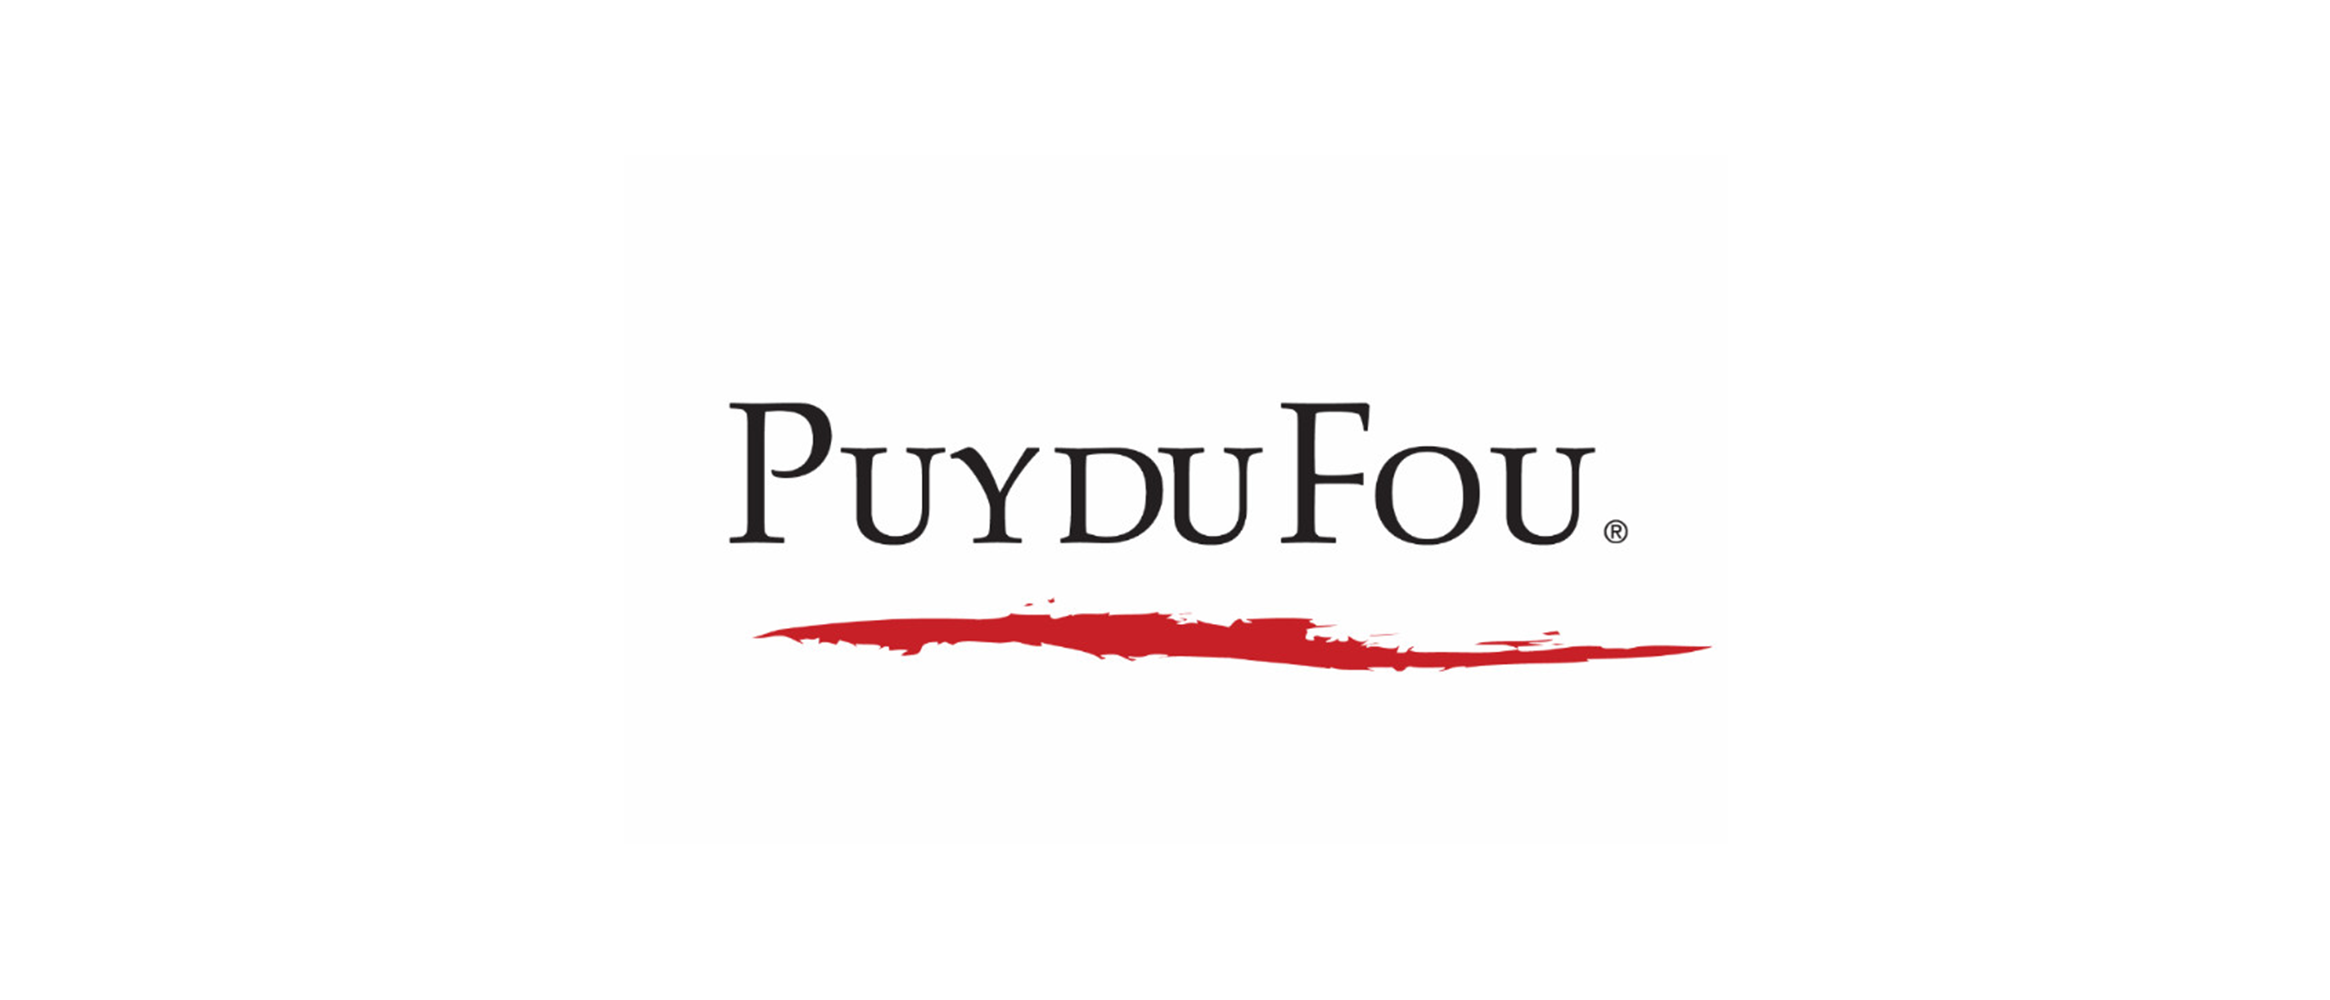 Puydufou.com/france